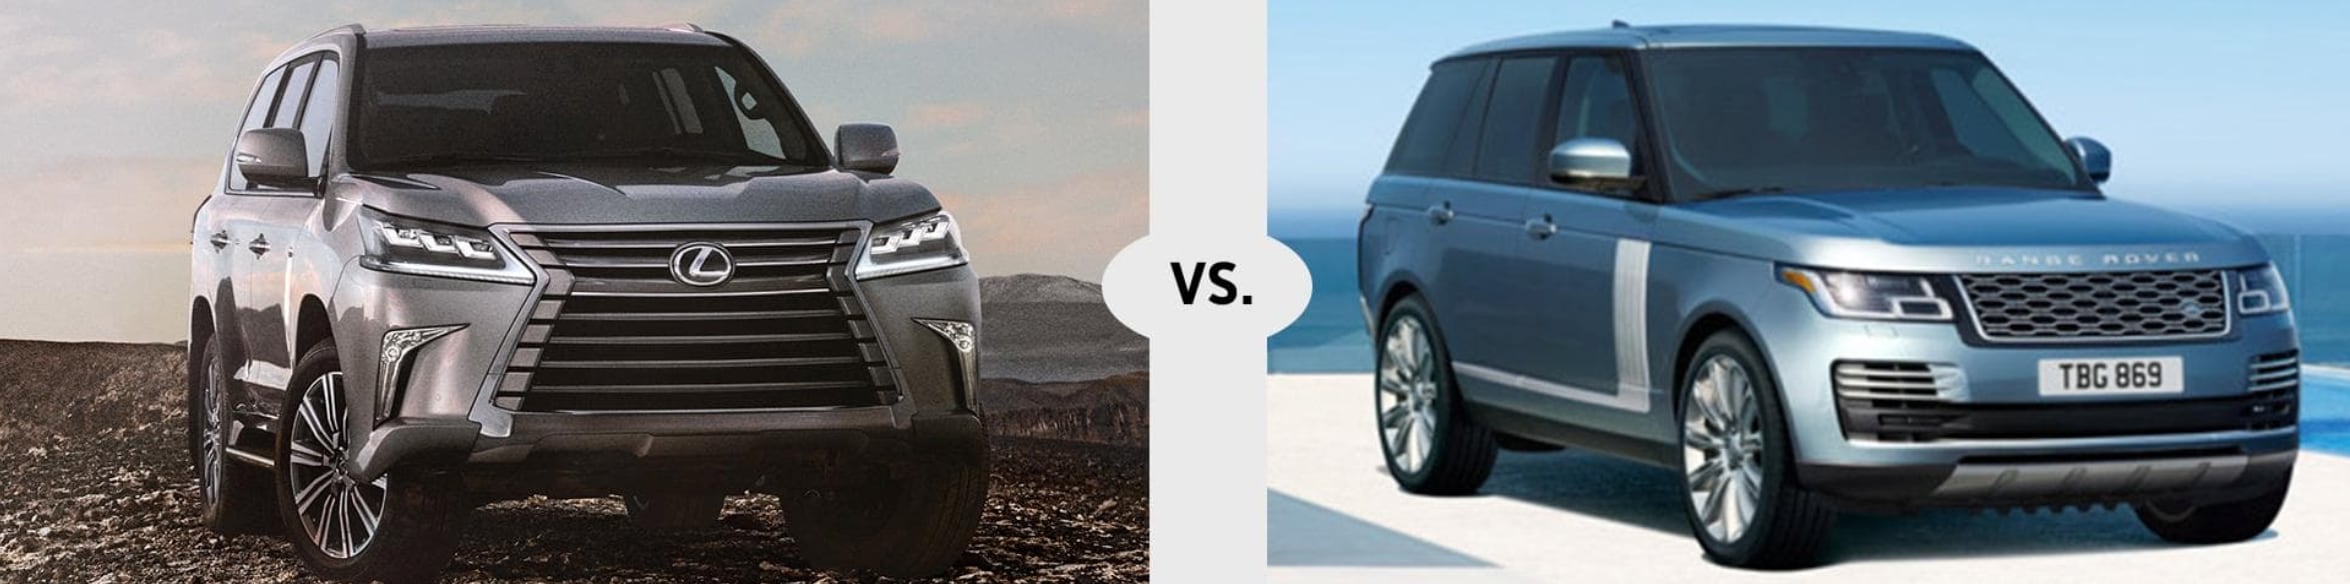 2019 Lexus LX vs Land Rover Range Rover